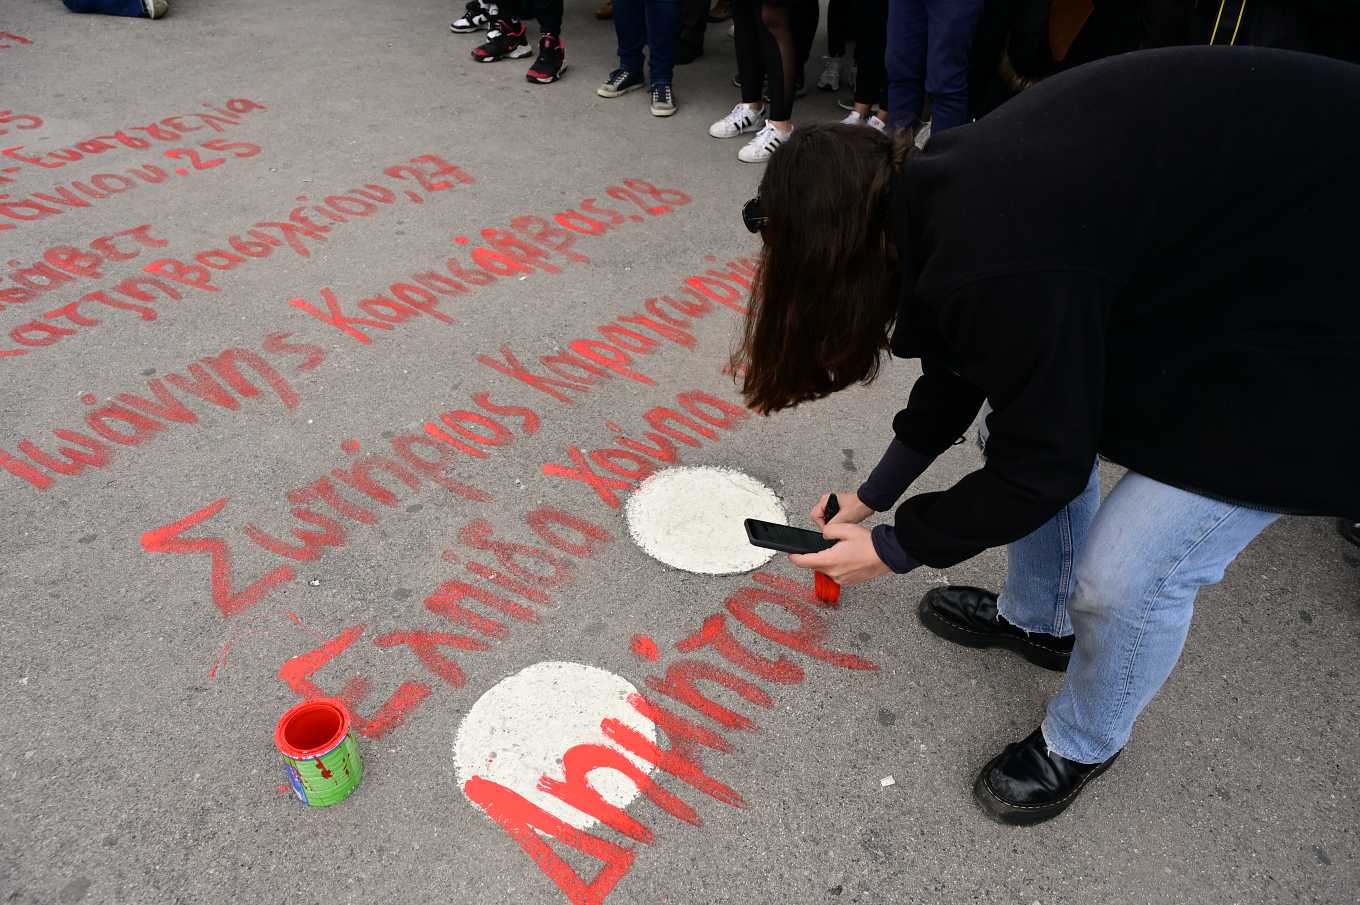 25η Μαρτίου: Η προτροπή του Δ. Αθηναίων για να μην καλυφθούν τα ονόματα των θυμάτων στα Τέμπη